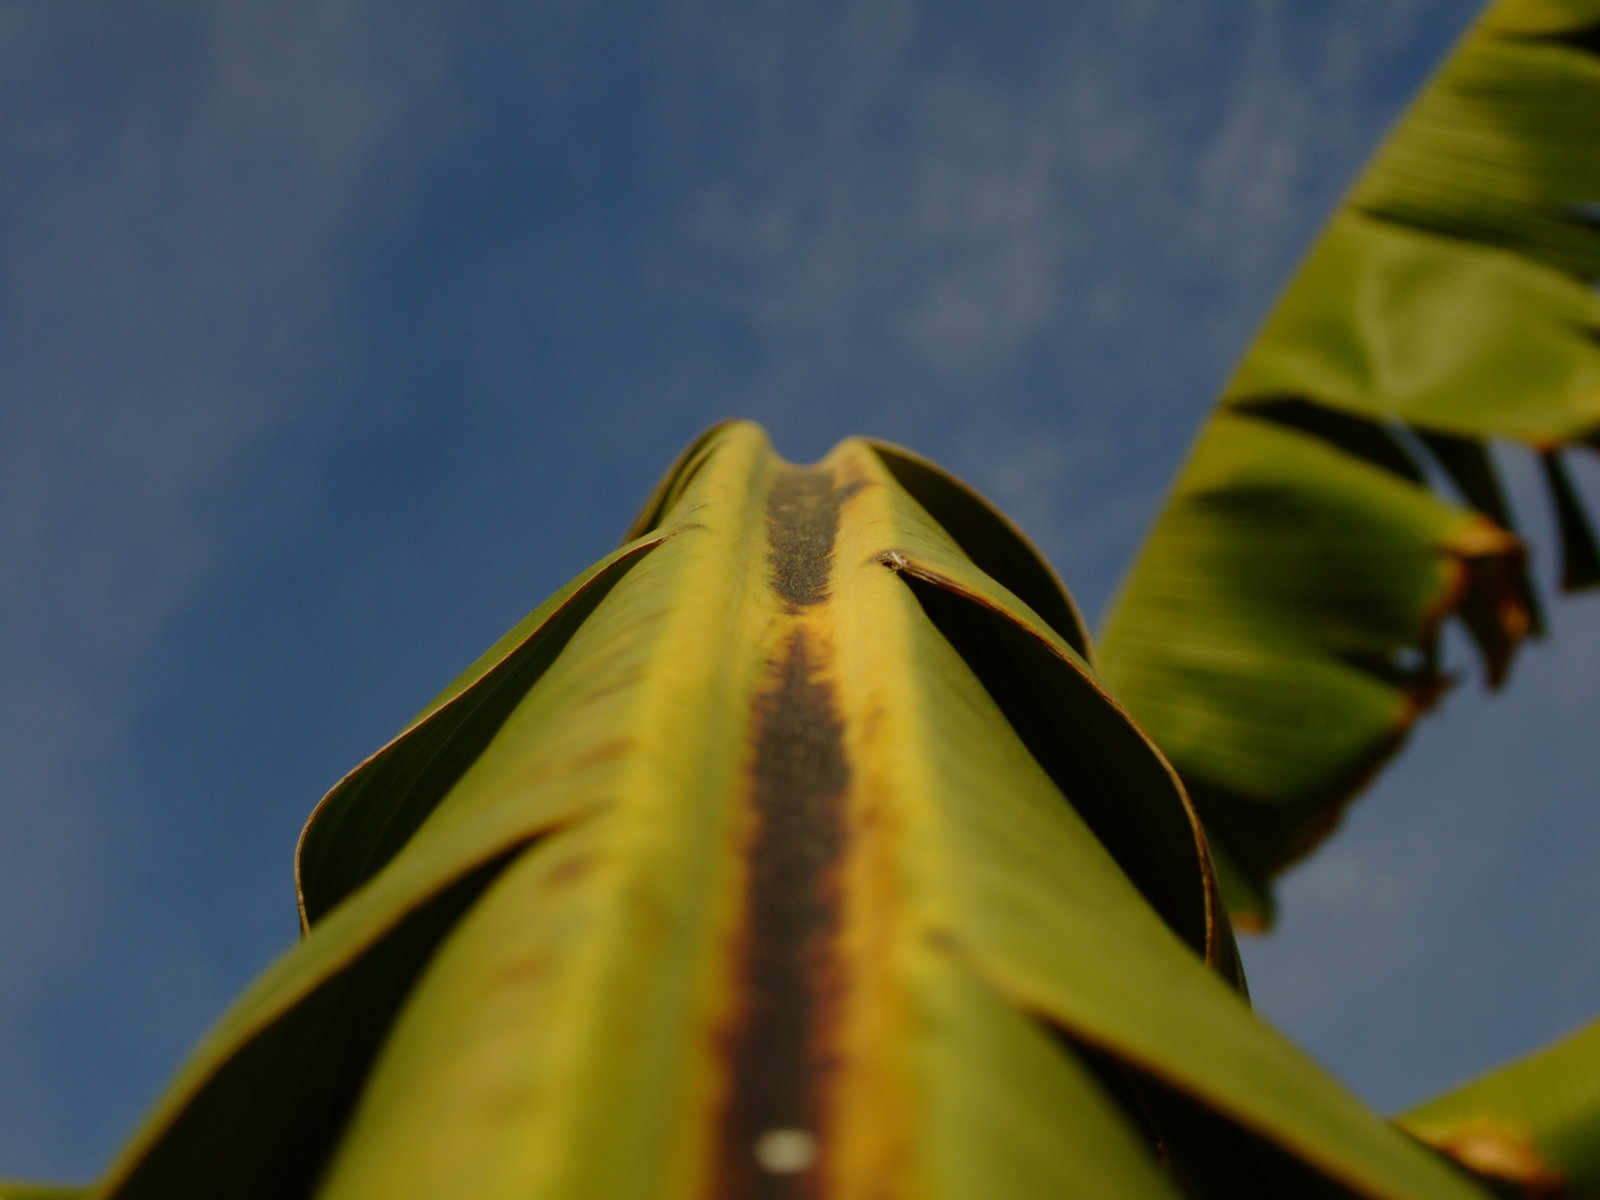 Dirty_Banana_Leaf_by_RikshaDriver.jpg